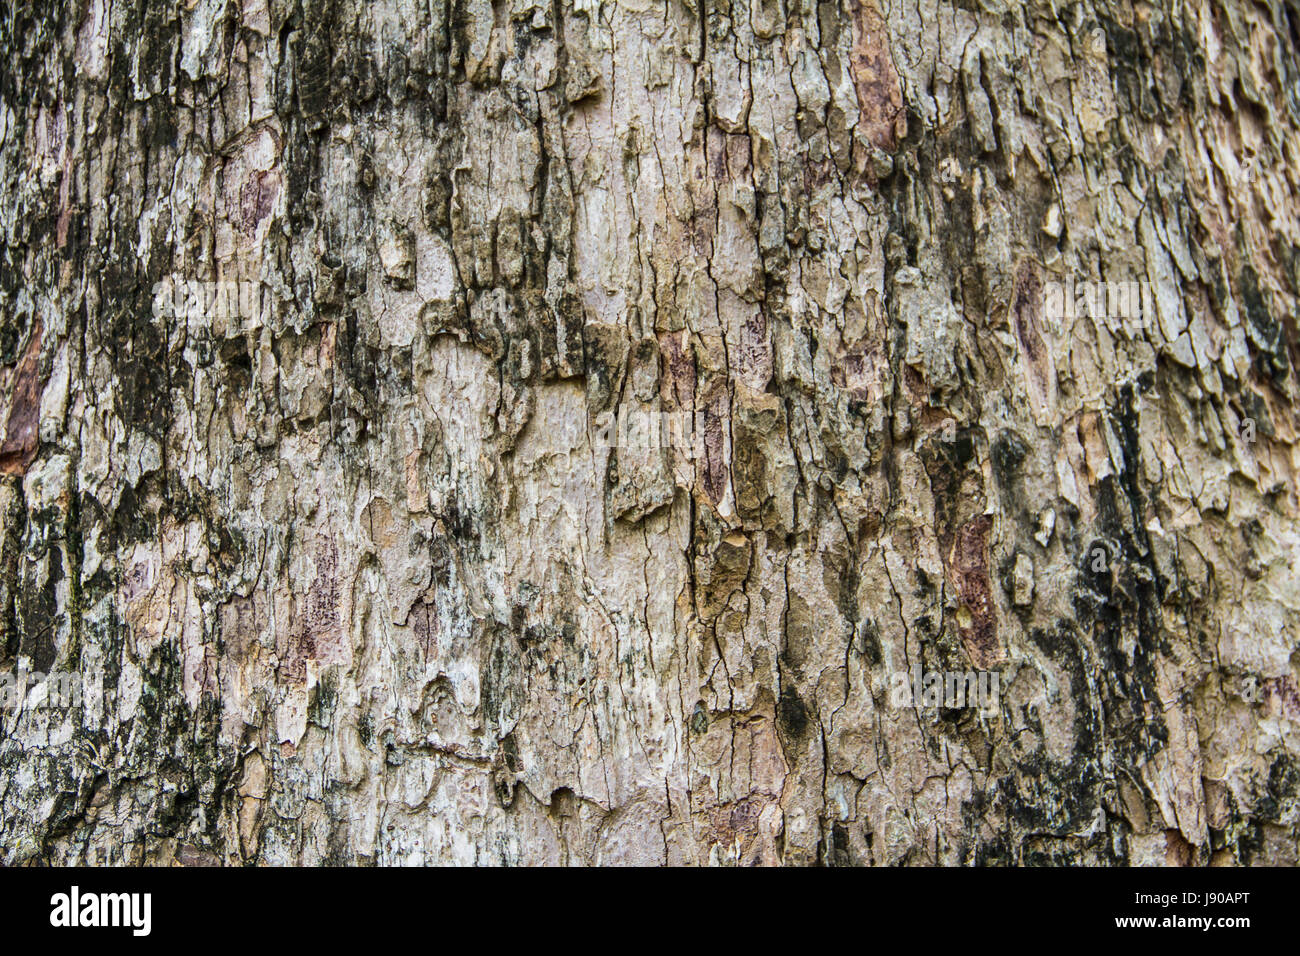 Bark tree texture Stock Photo